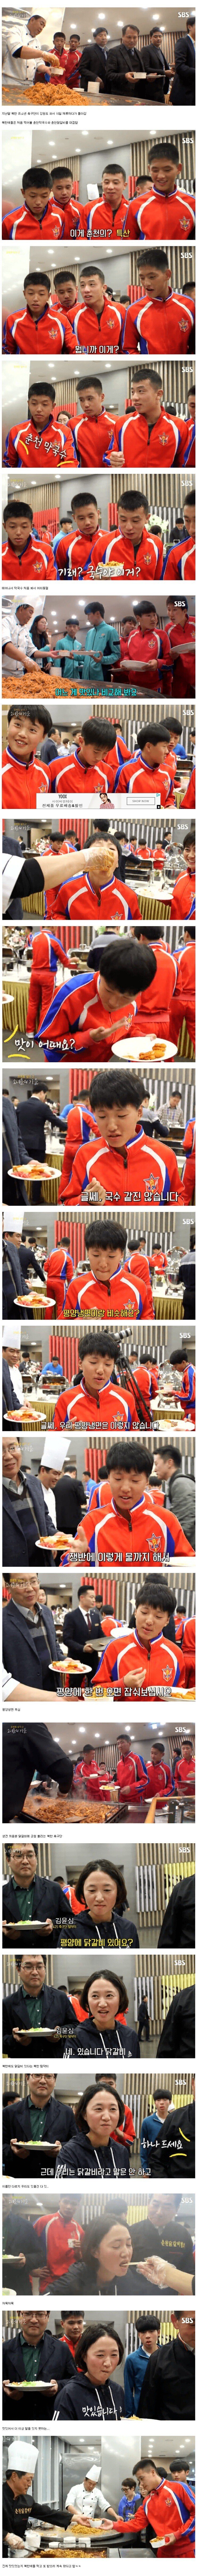 춘천 막국수, 닭갈비를 처음 먹어본 북한 선수들.jpg